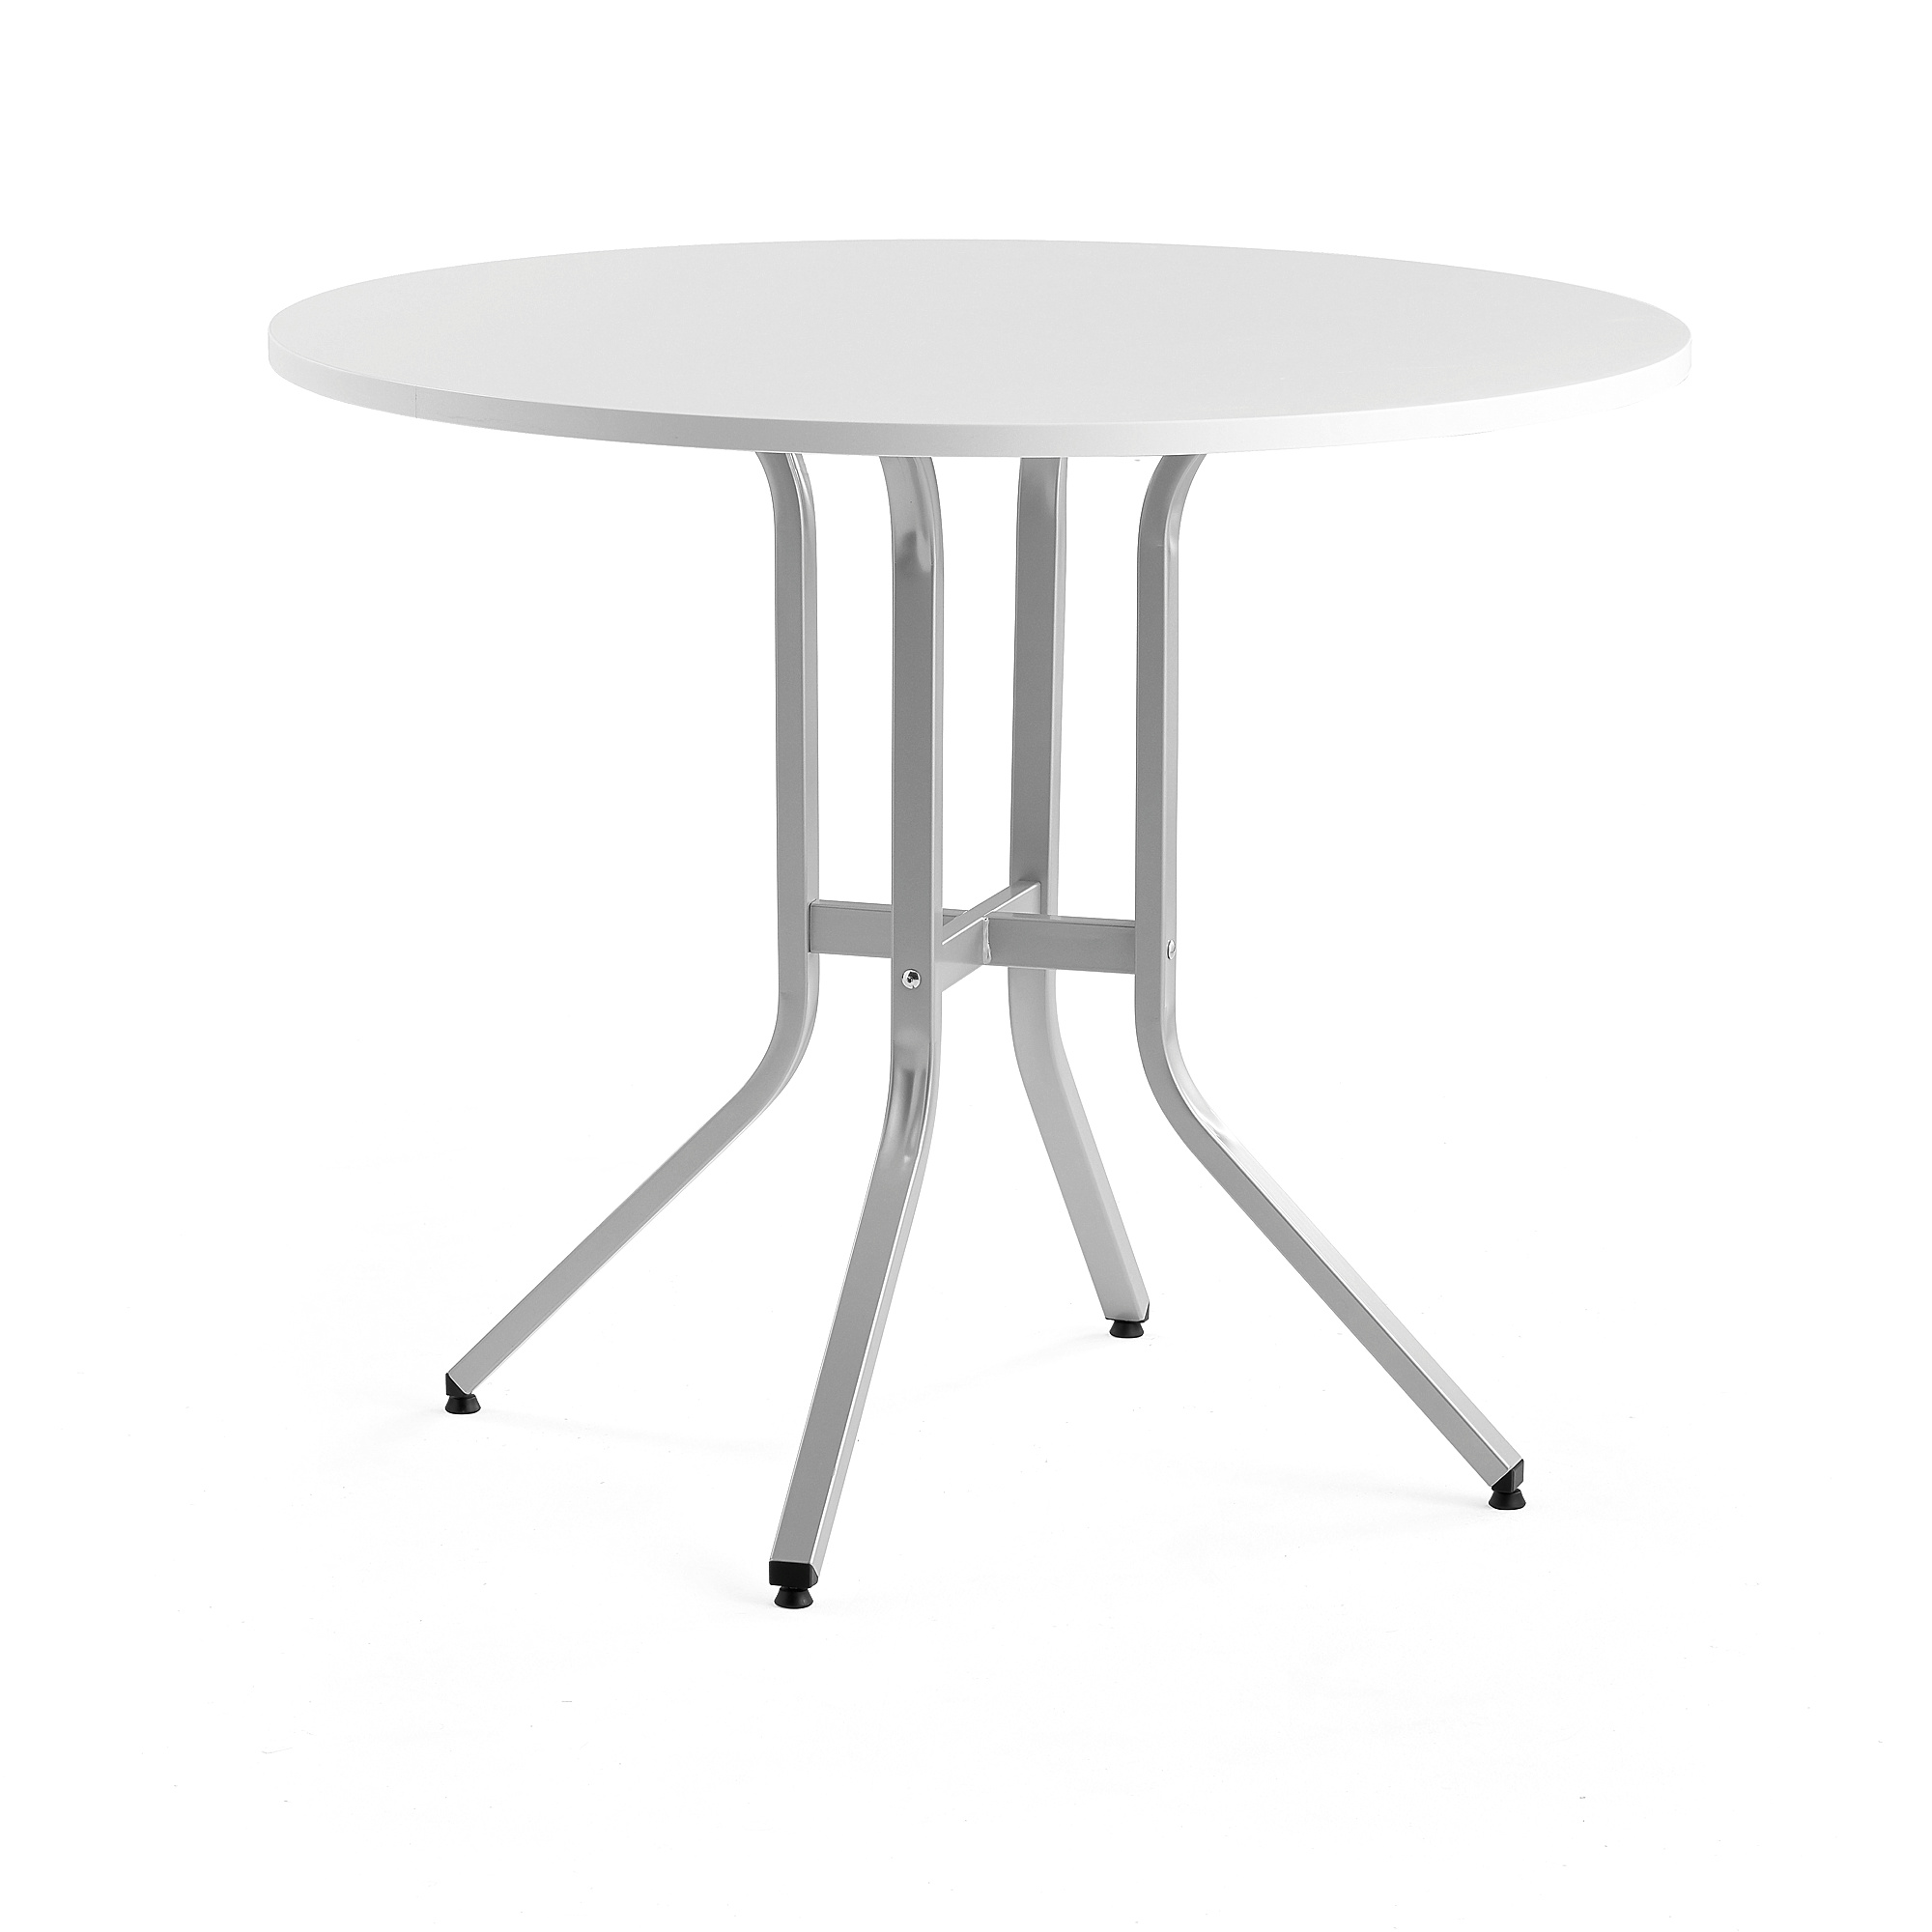 Stůl VARIOUS, Ø1100 mm, výška 900 mm, stříbrná, bílá